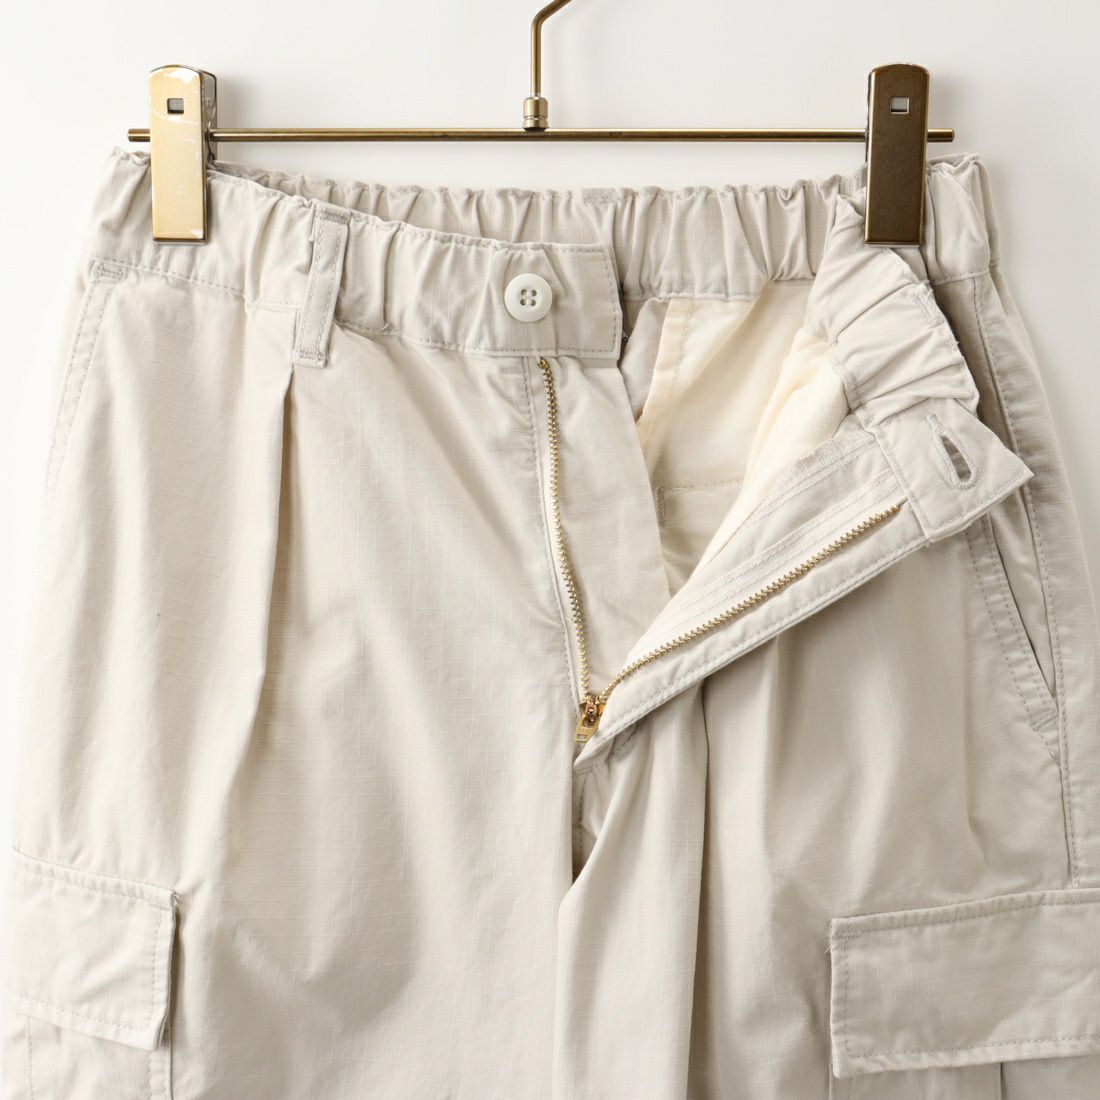 Jeans Factory Clothes [ジーンズファクトリークローズ] リップストップカーゴパンツ [JFC-231-028] 68 OFF